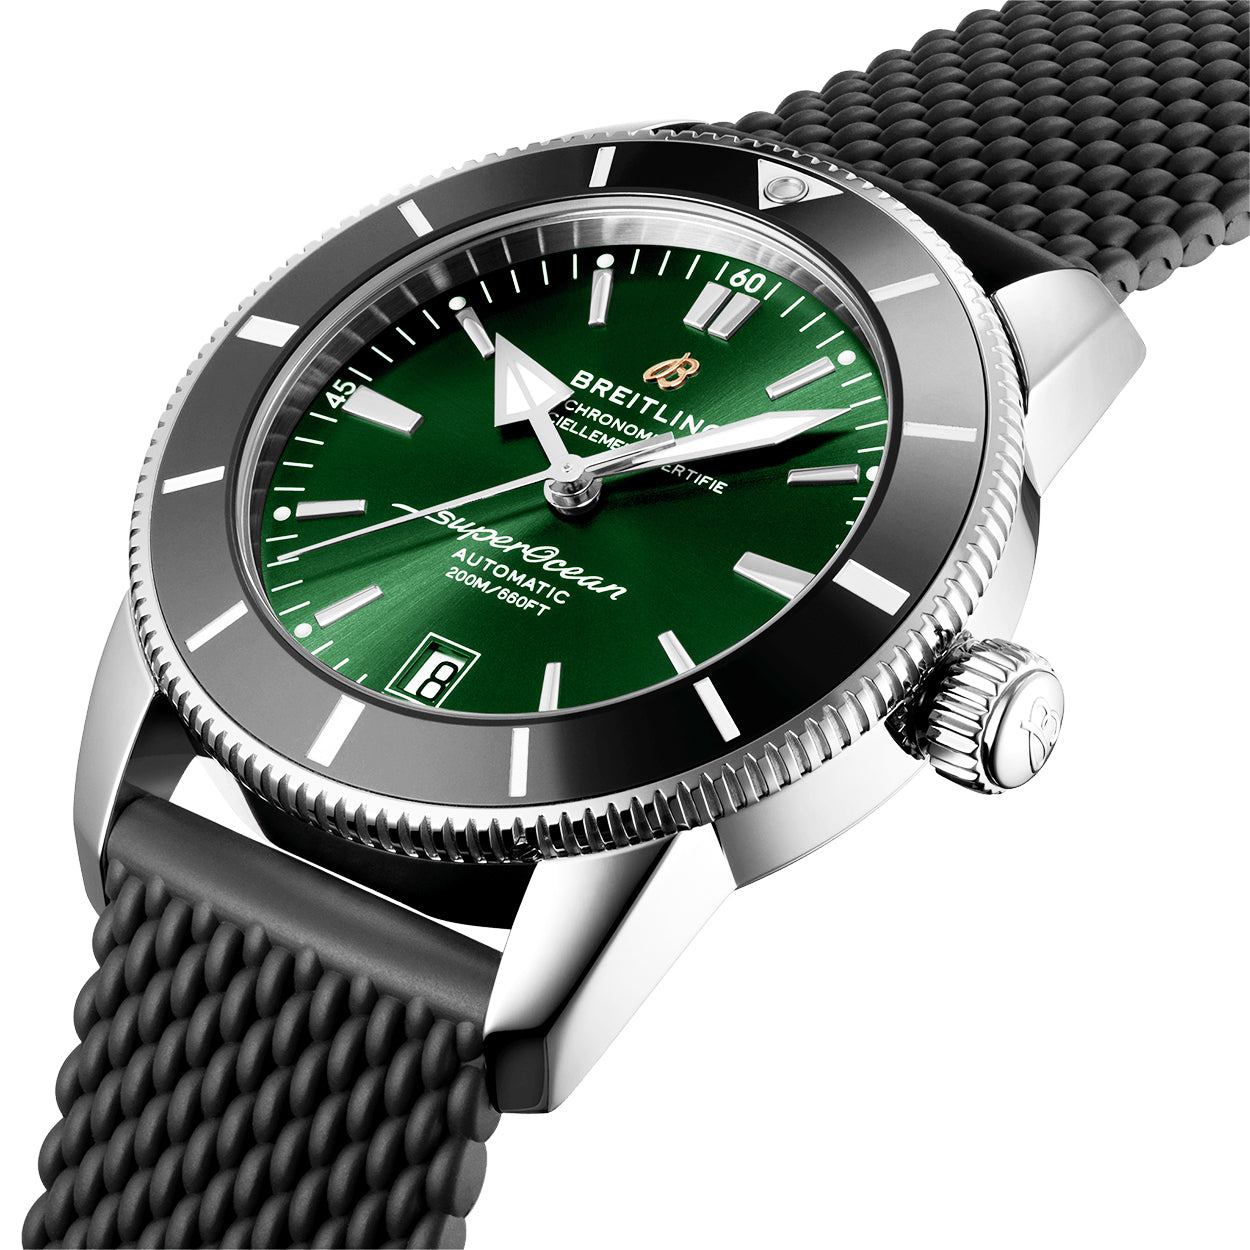 Breitling Superocean Heritage II 42mm Green Dial & Bezel Watch